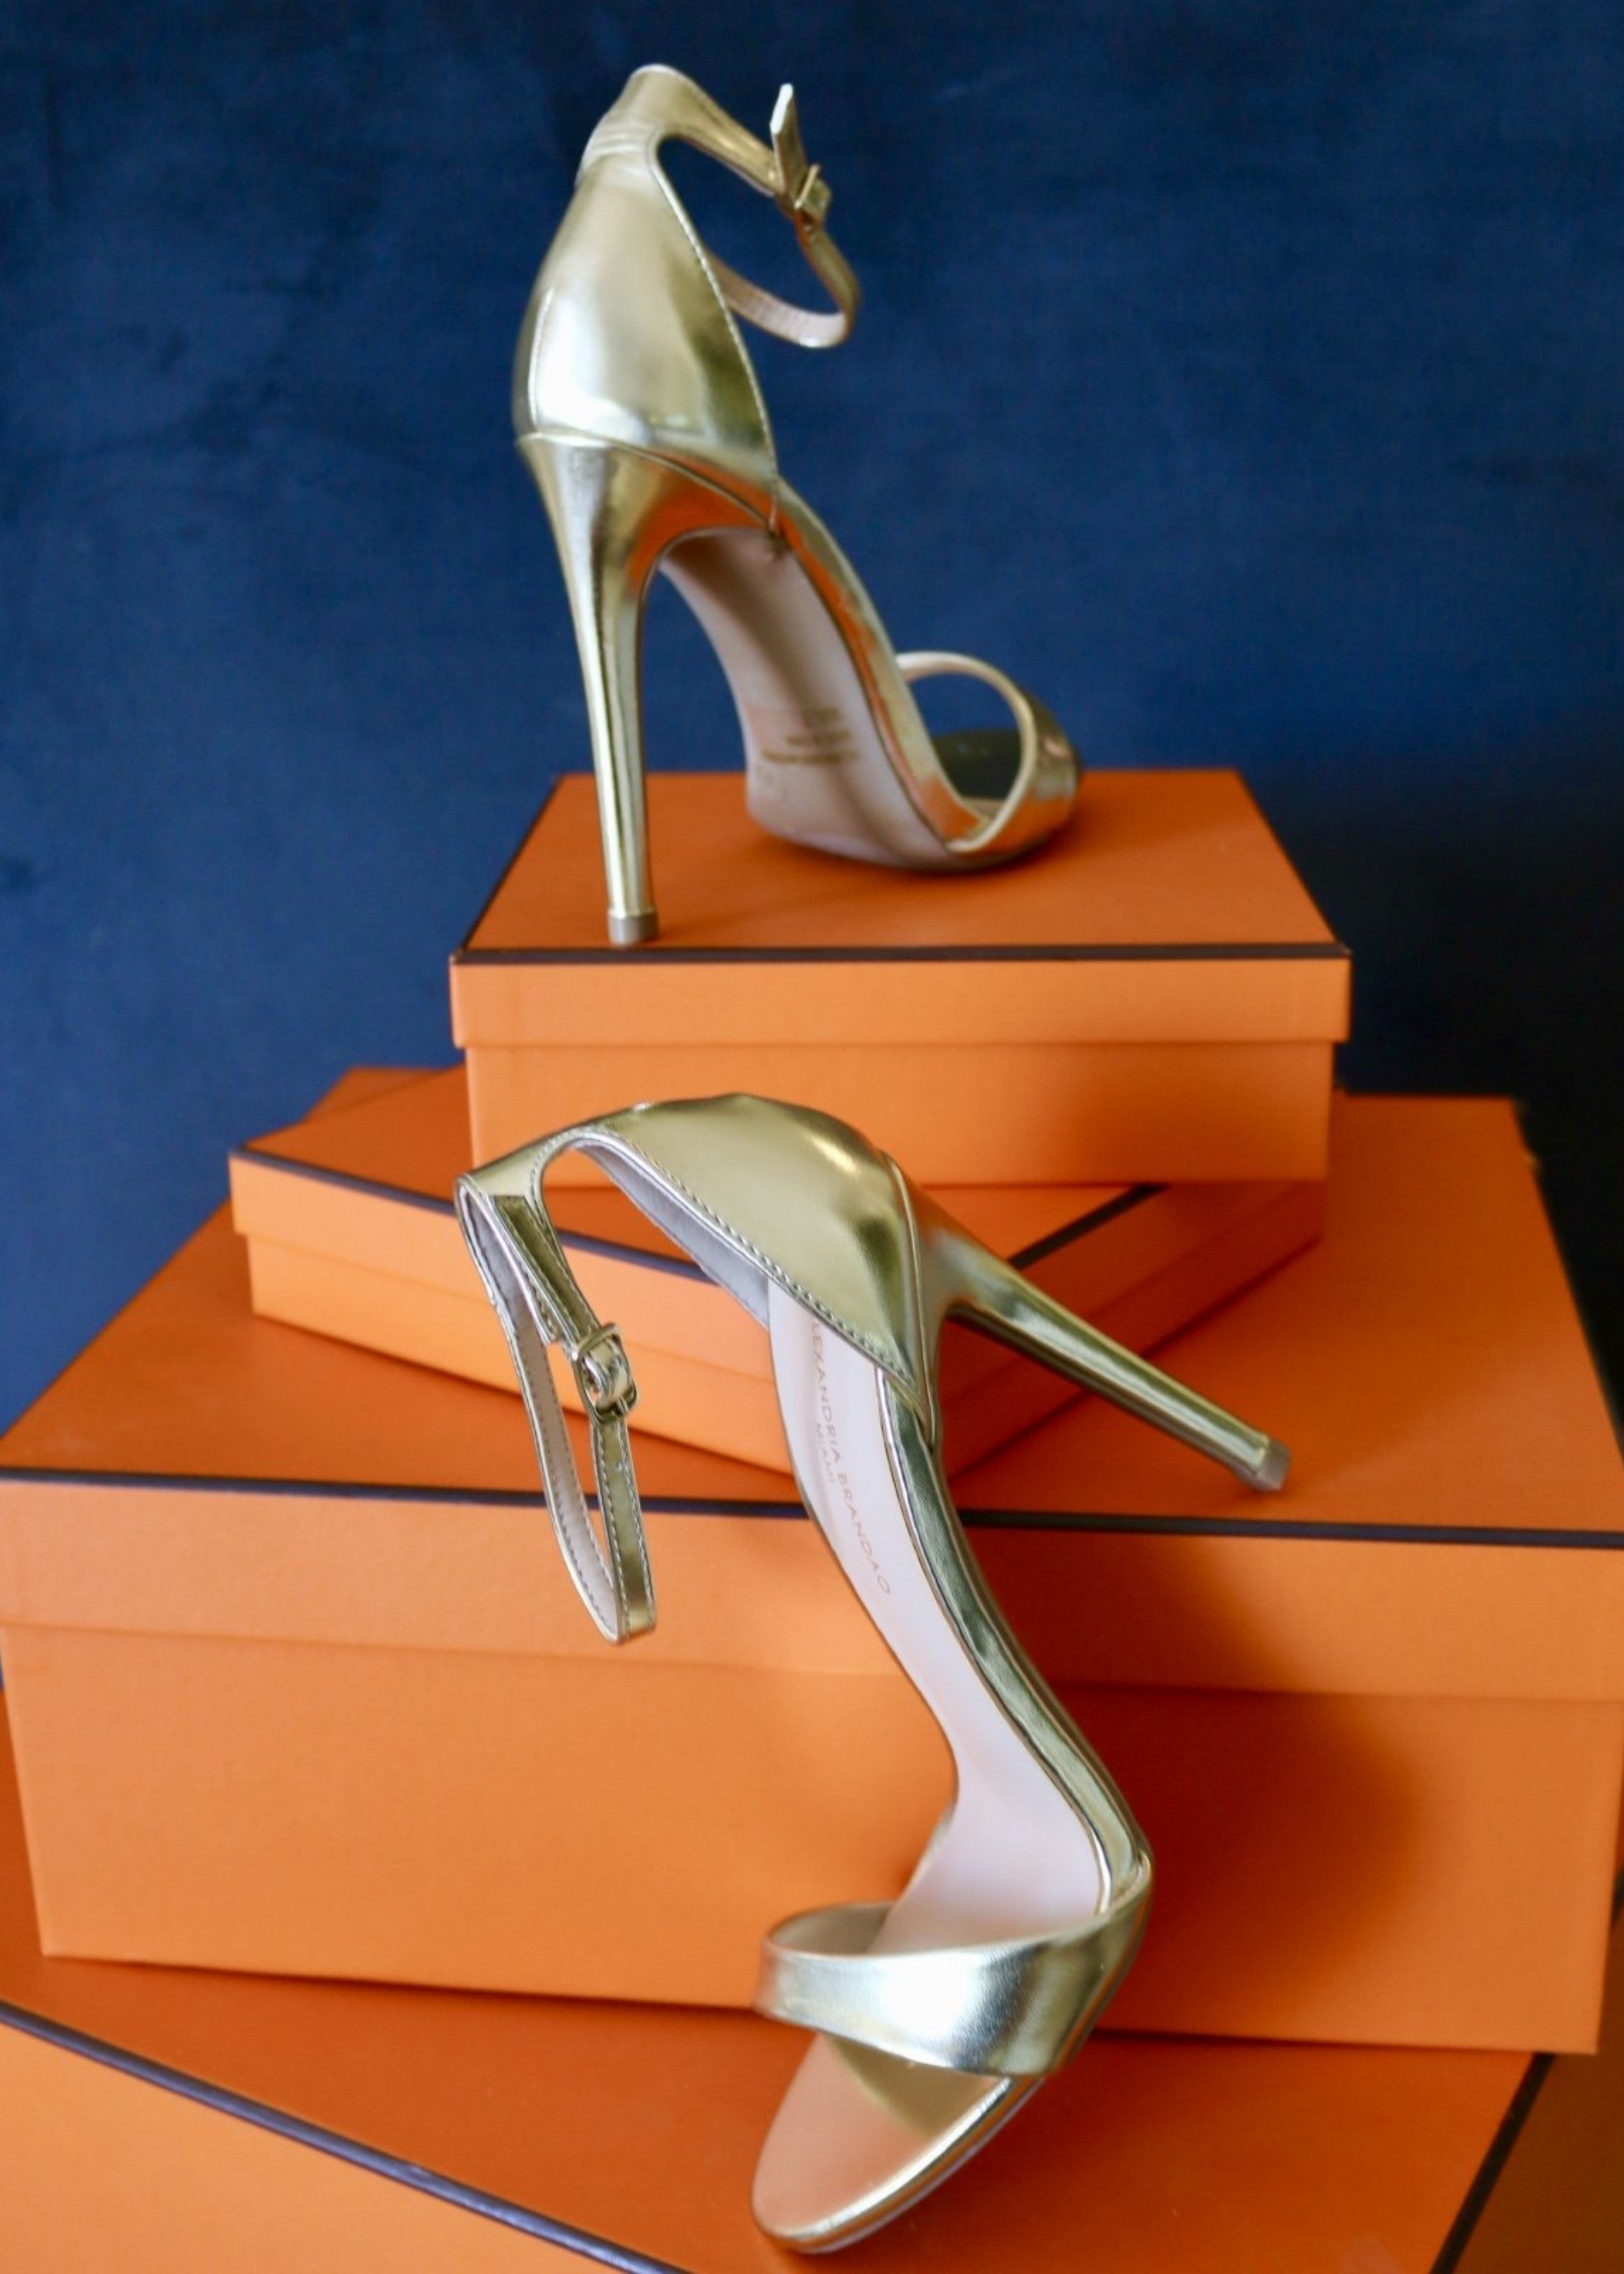 Women Heels - Buy Heels for Women at Discount Upto 60% | Myntra